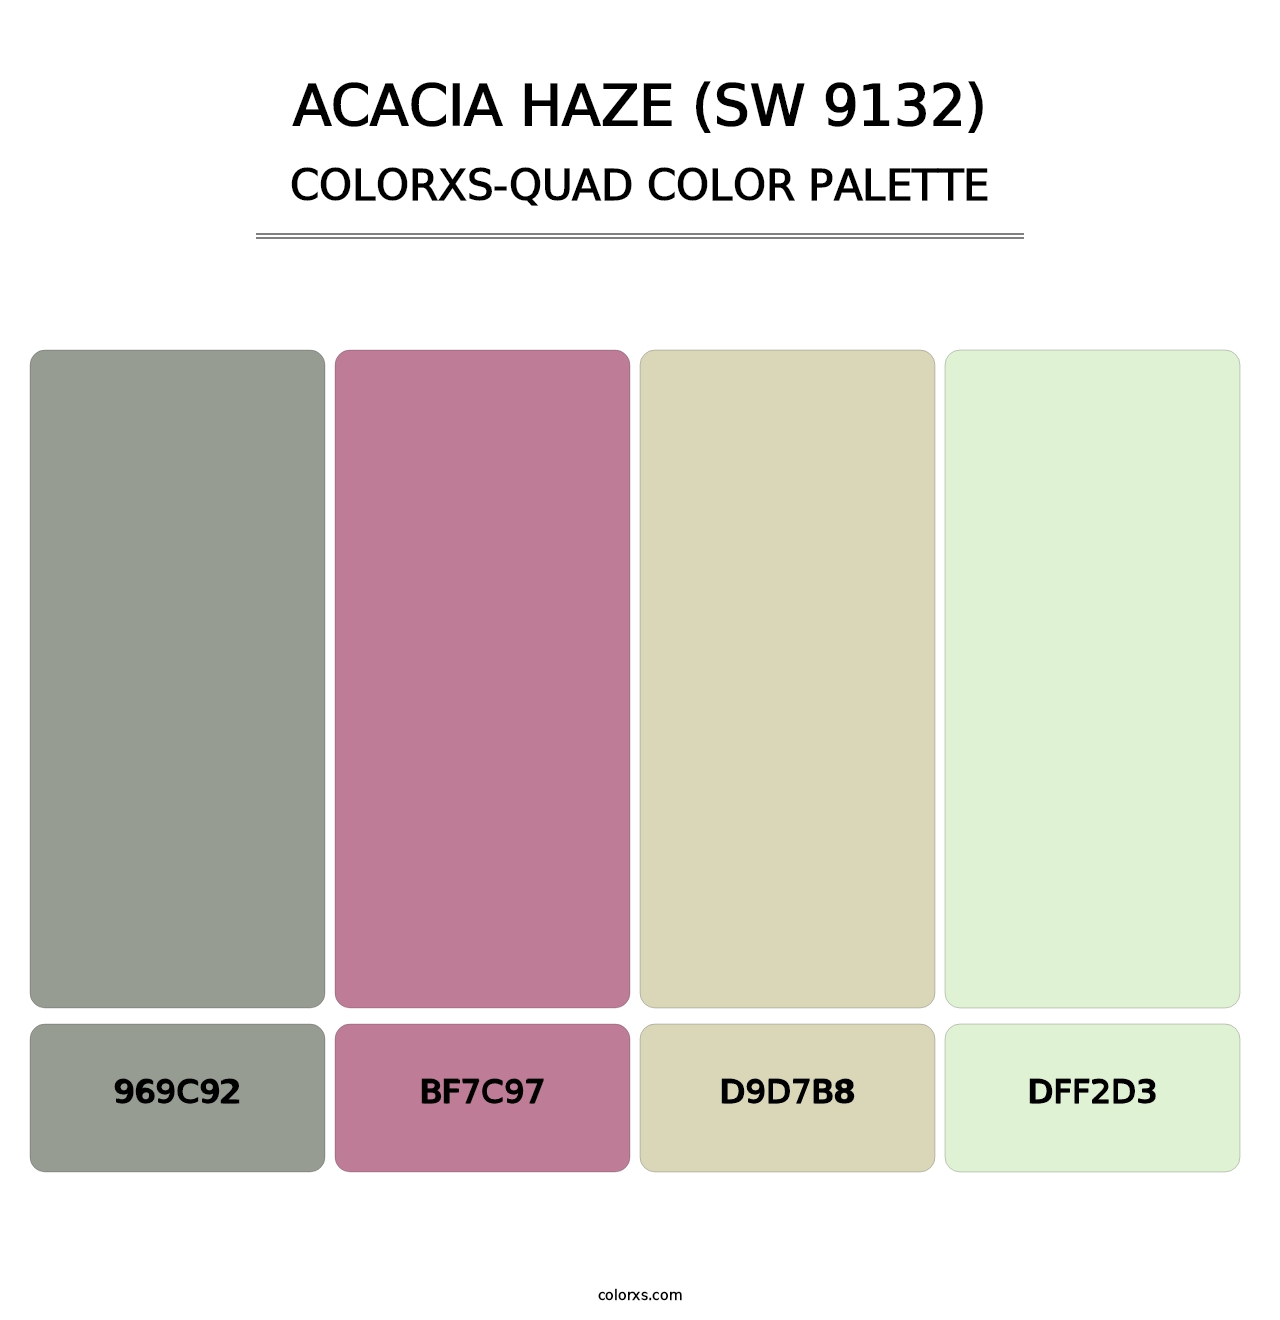 Acacia Haze (SW 9132) - Colorxs Quad Palette